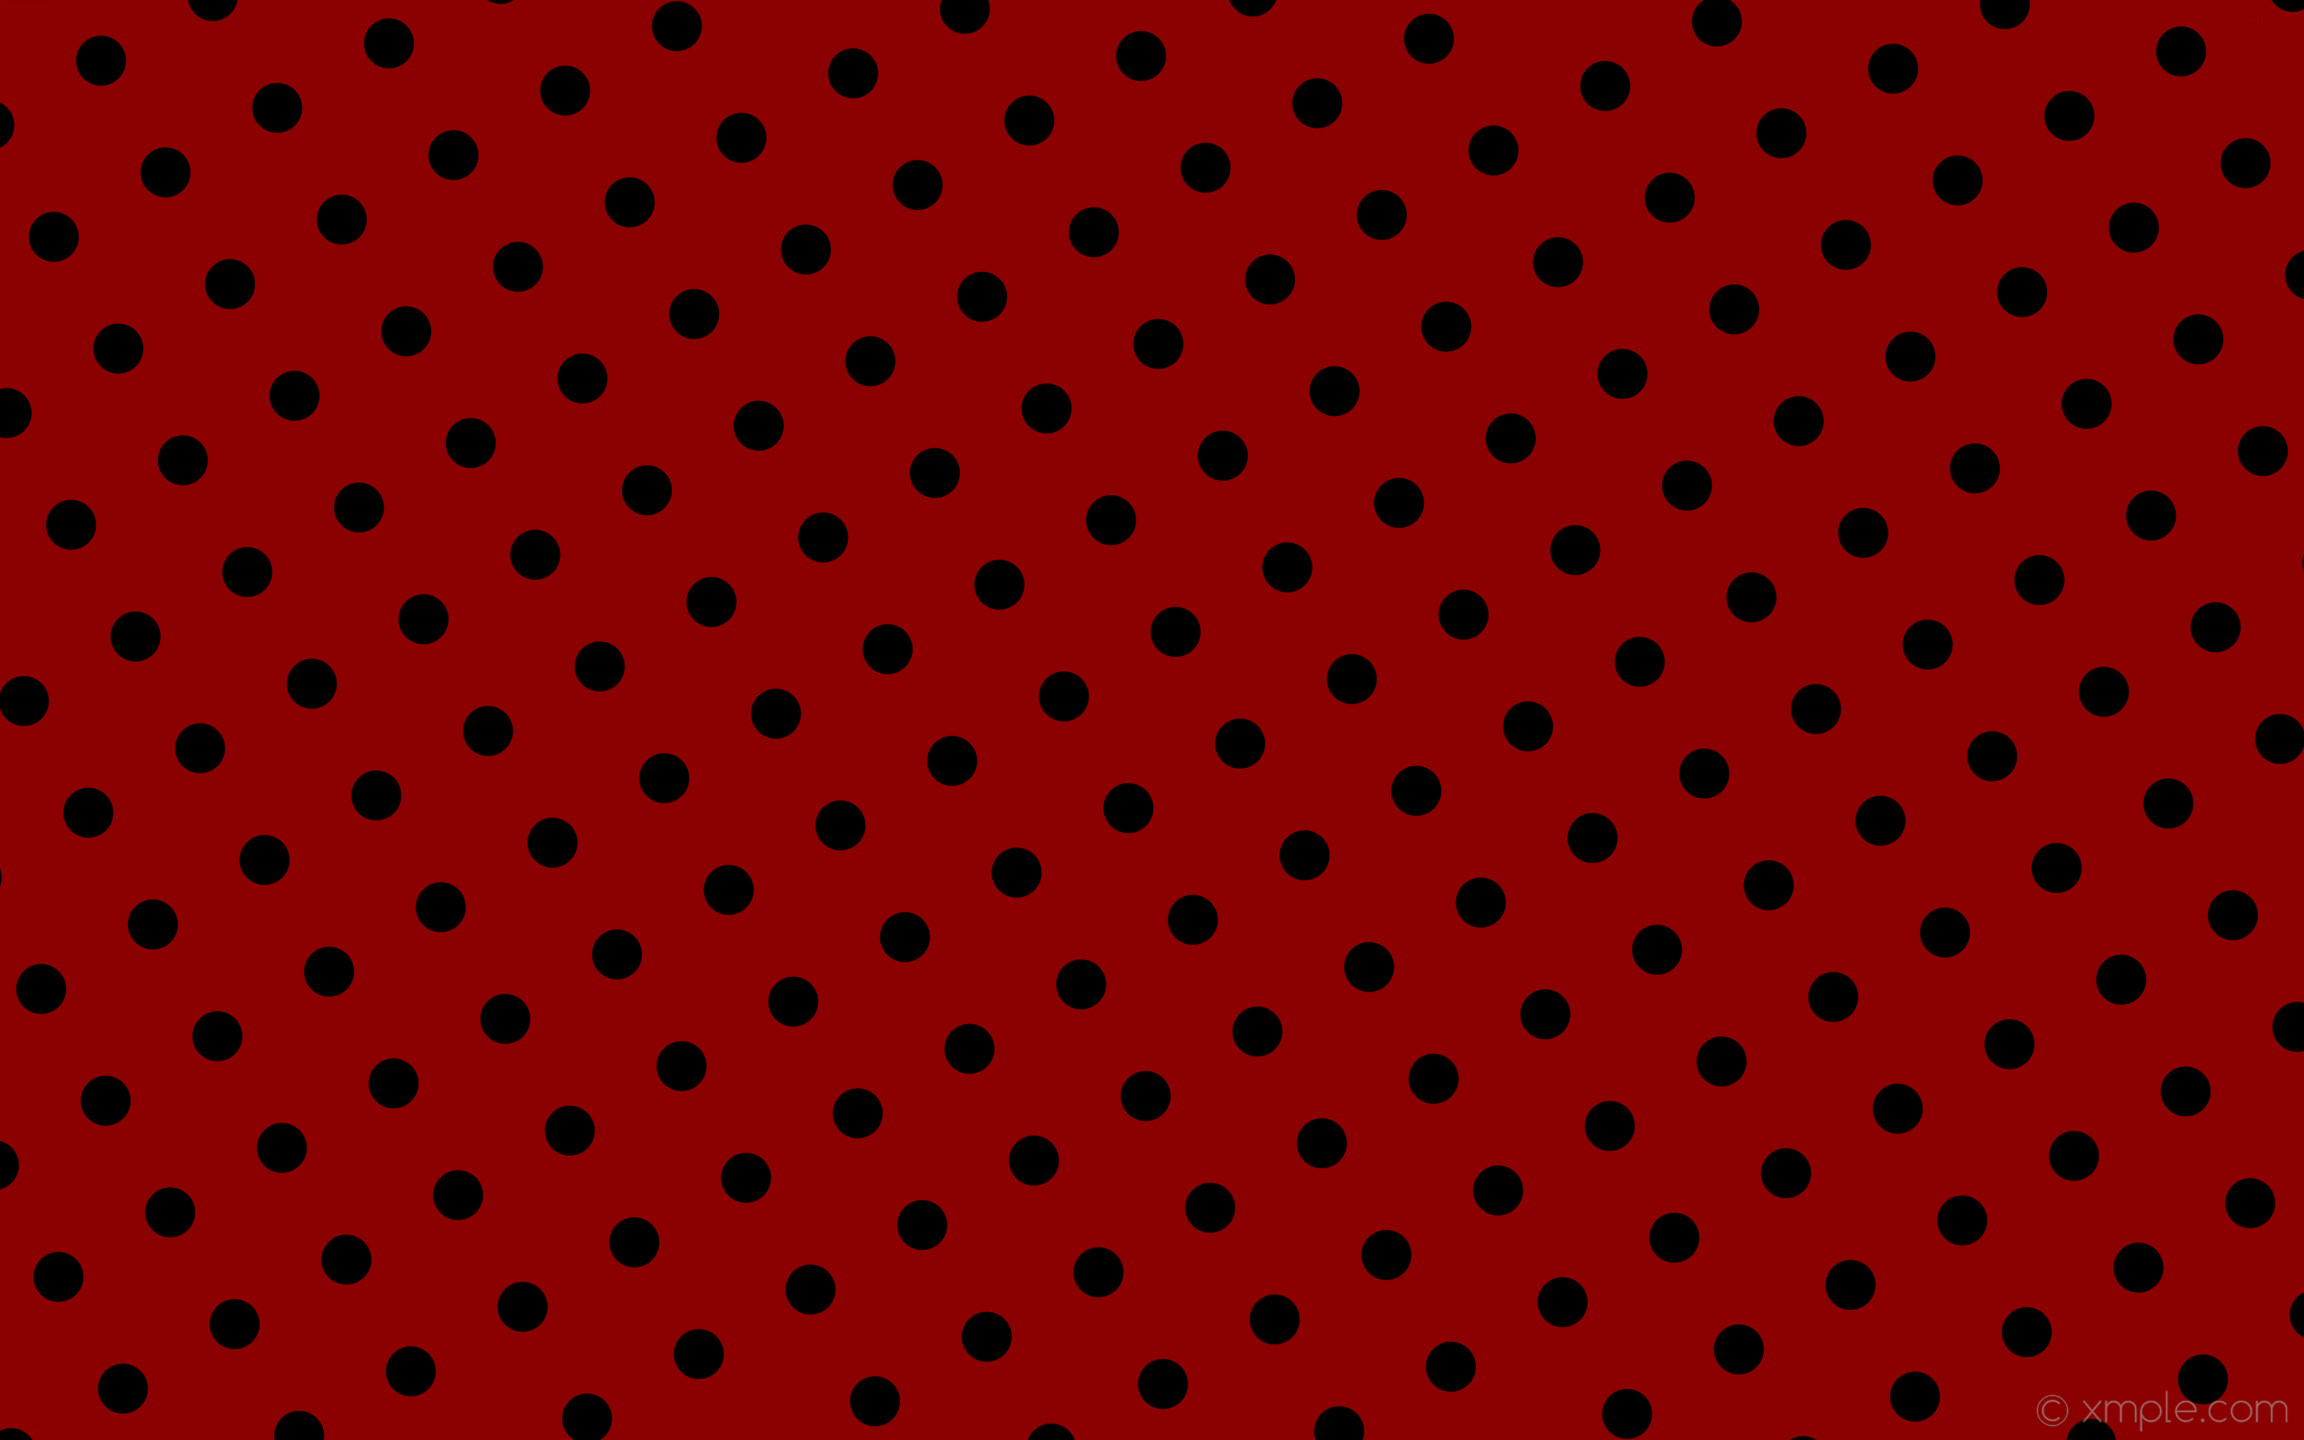 2304x1440 wallpaper red polka dots black spots dark red #8b0000 #000000 210Â° 50px  129px